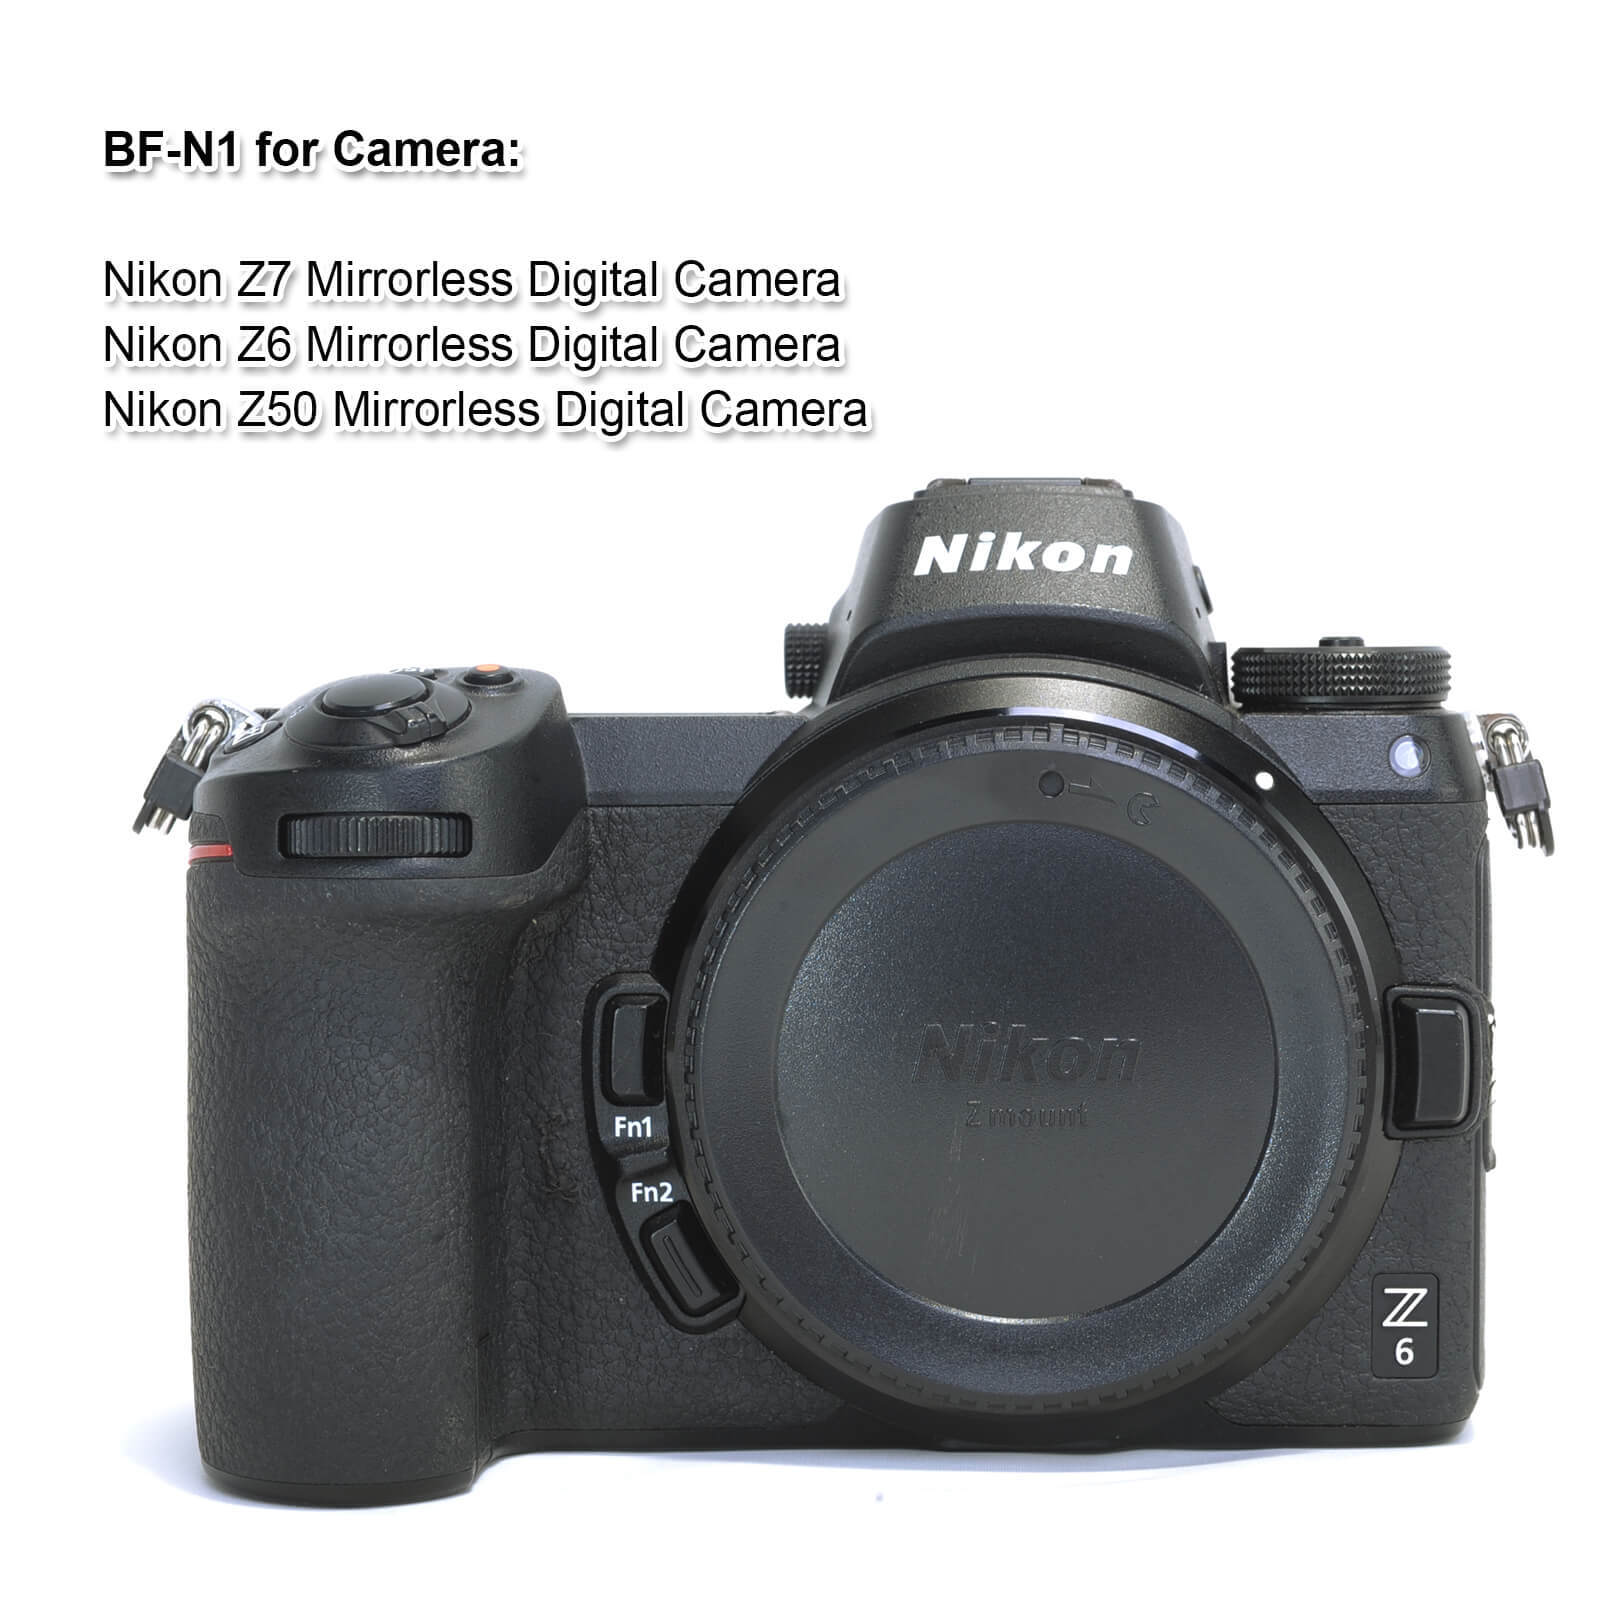 Camera Body Cap and Rear Lens Cap for Nikon Z7 Z6 Z50 Camera Body